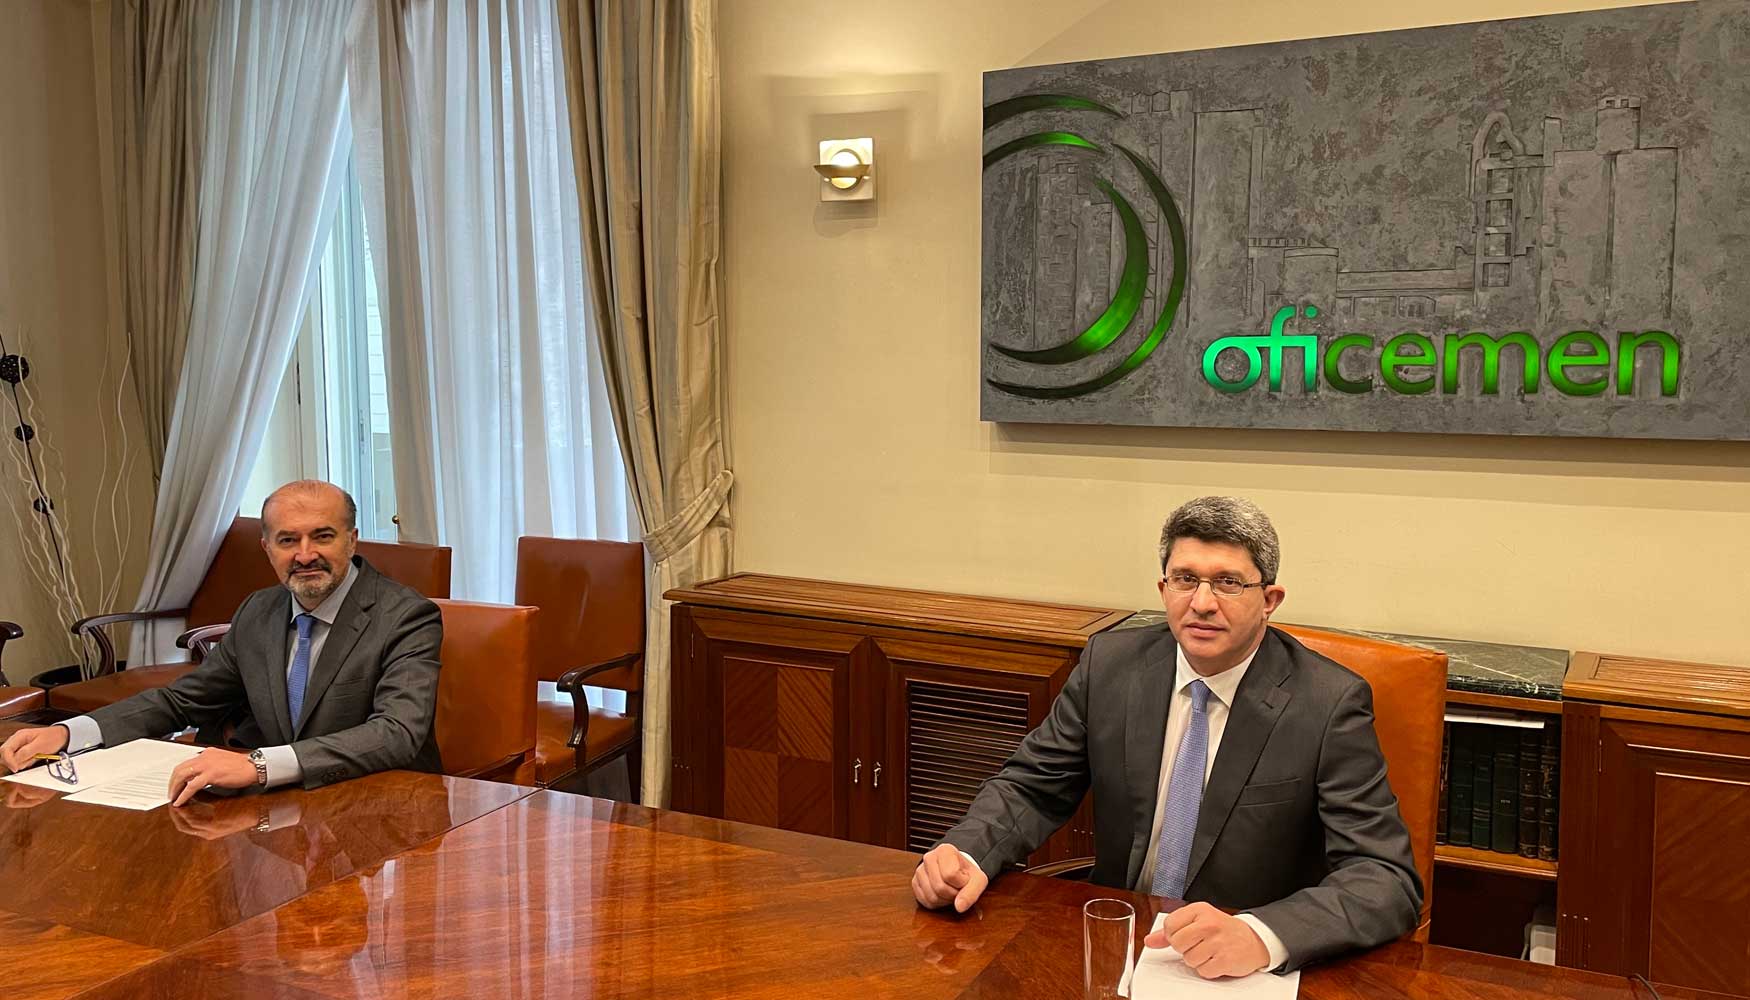 Rueda de prensa de Oficemen. De izquierda a derecha: Aniceto Zaragoza, director general, y Vctor Garca Brosa, presidente...